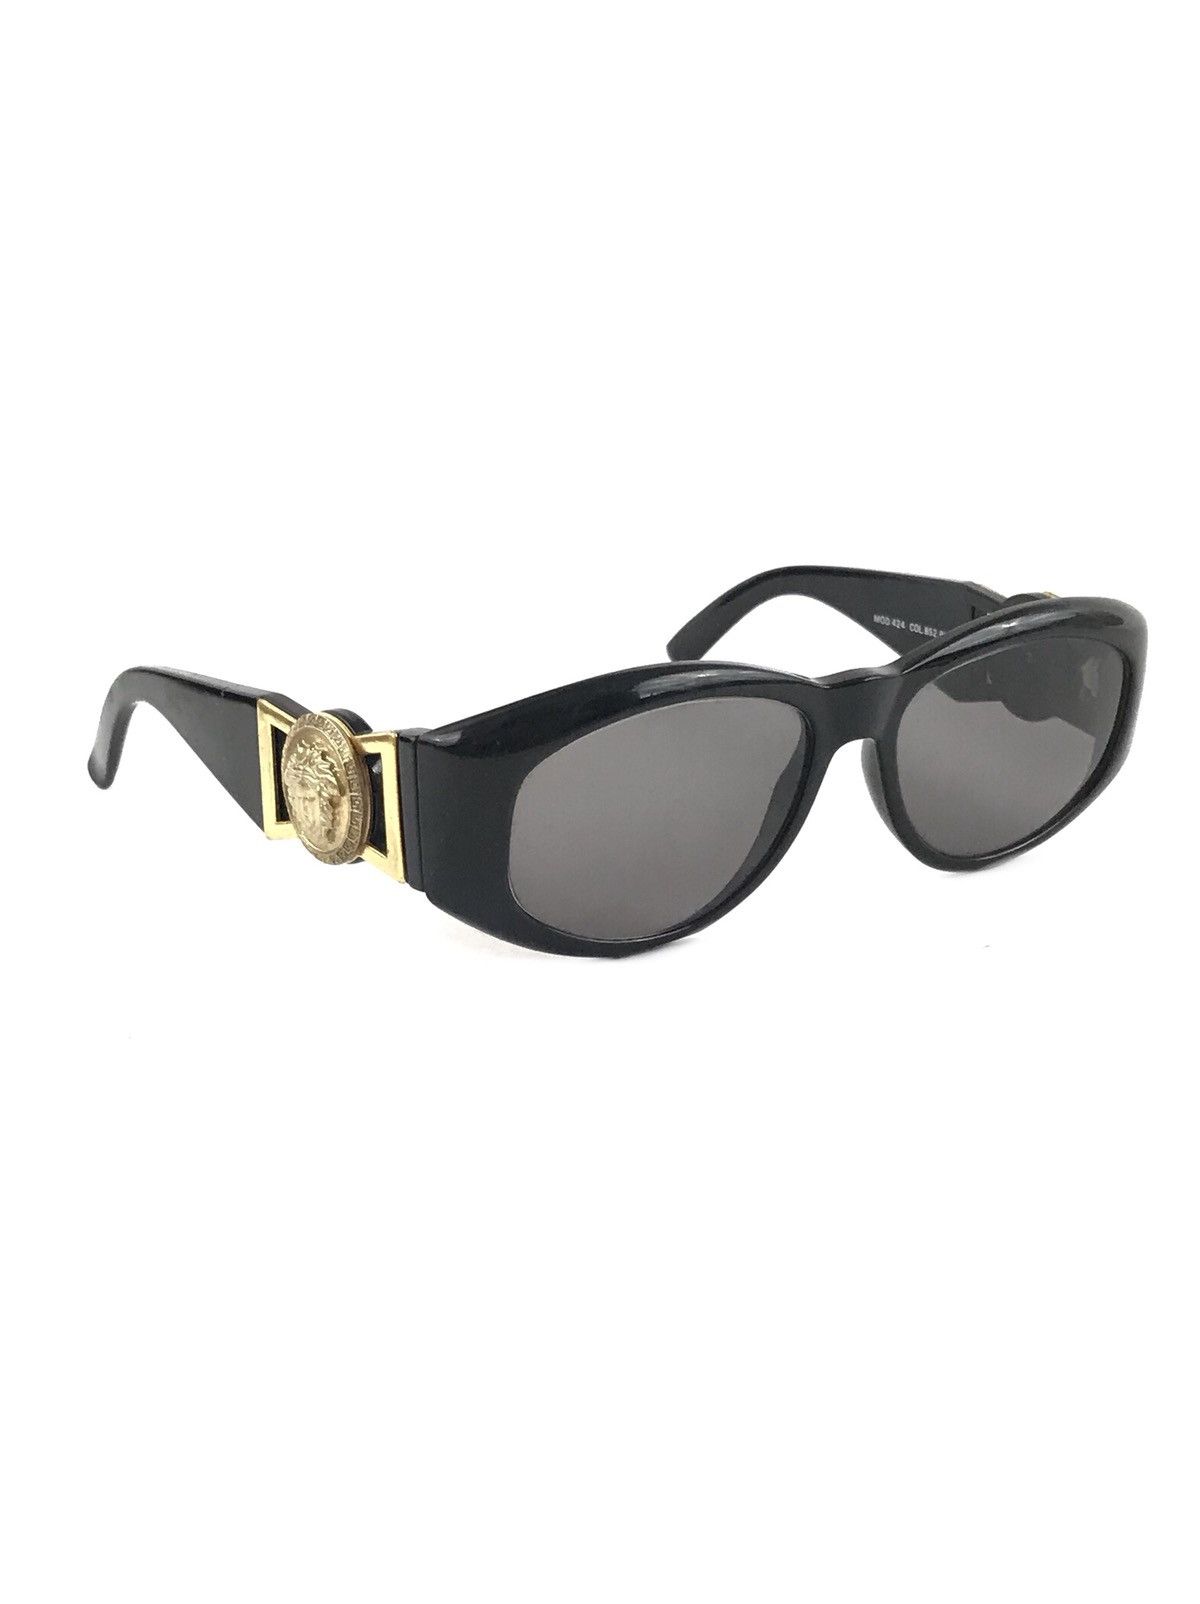 Versace Biggie Smalls Style Sunglasses Grailed 